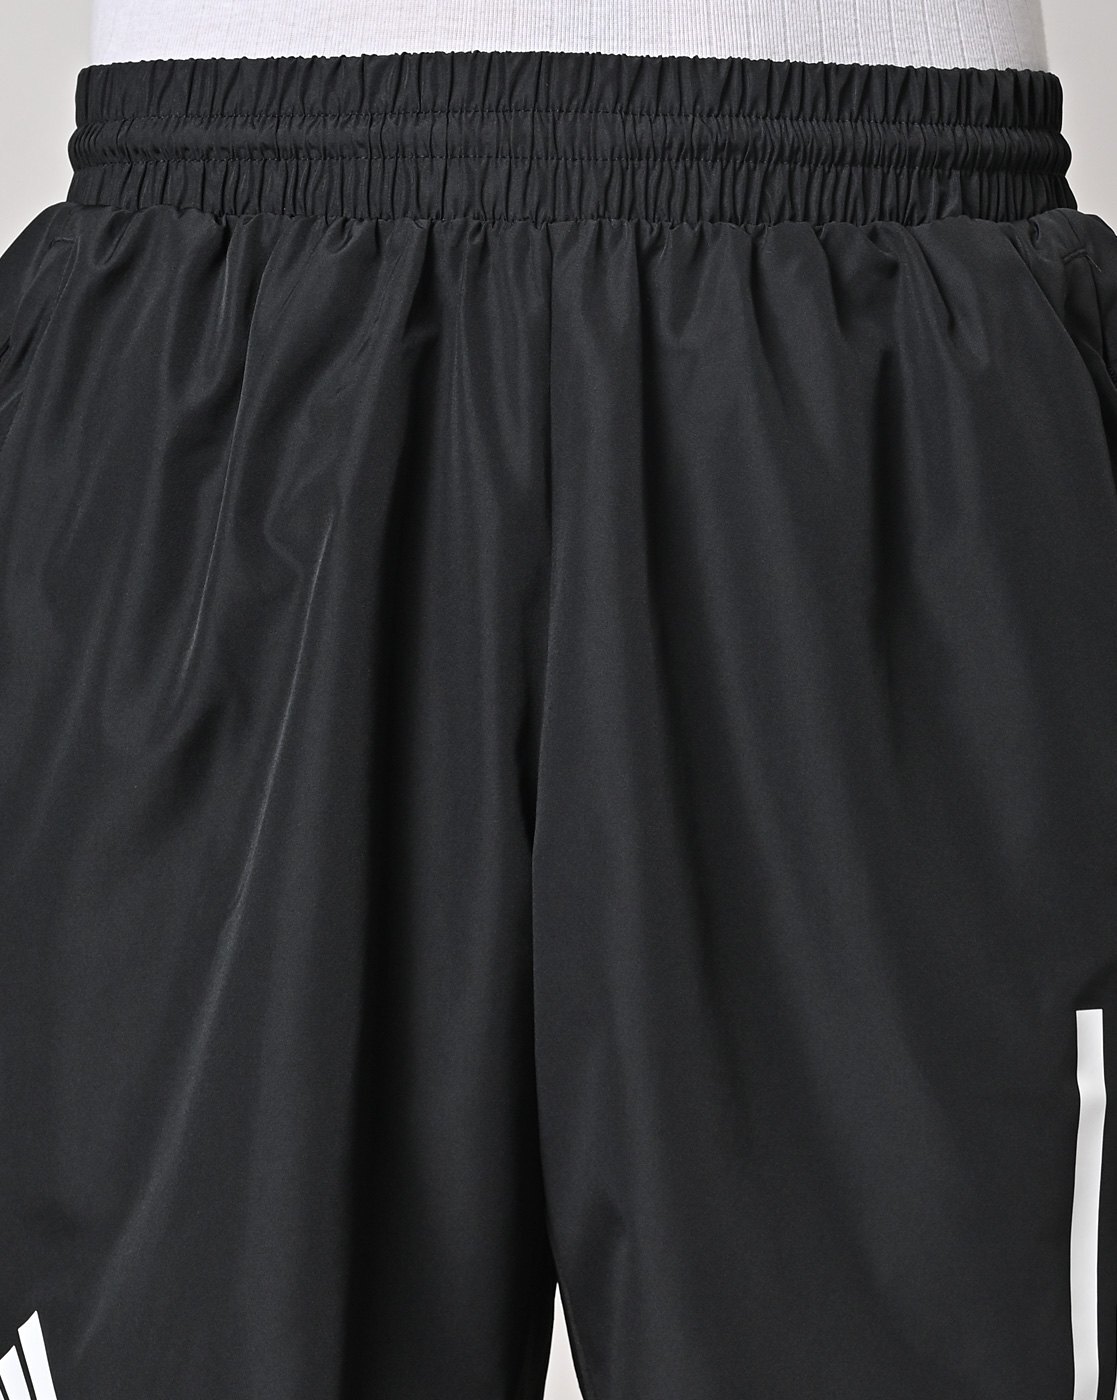 adidas Running Own The Run 3 inch split shorts in black | ASOS